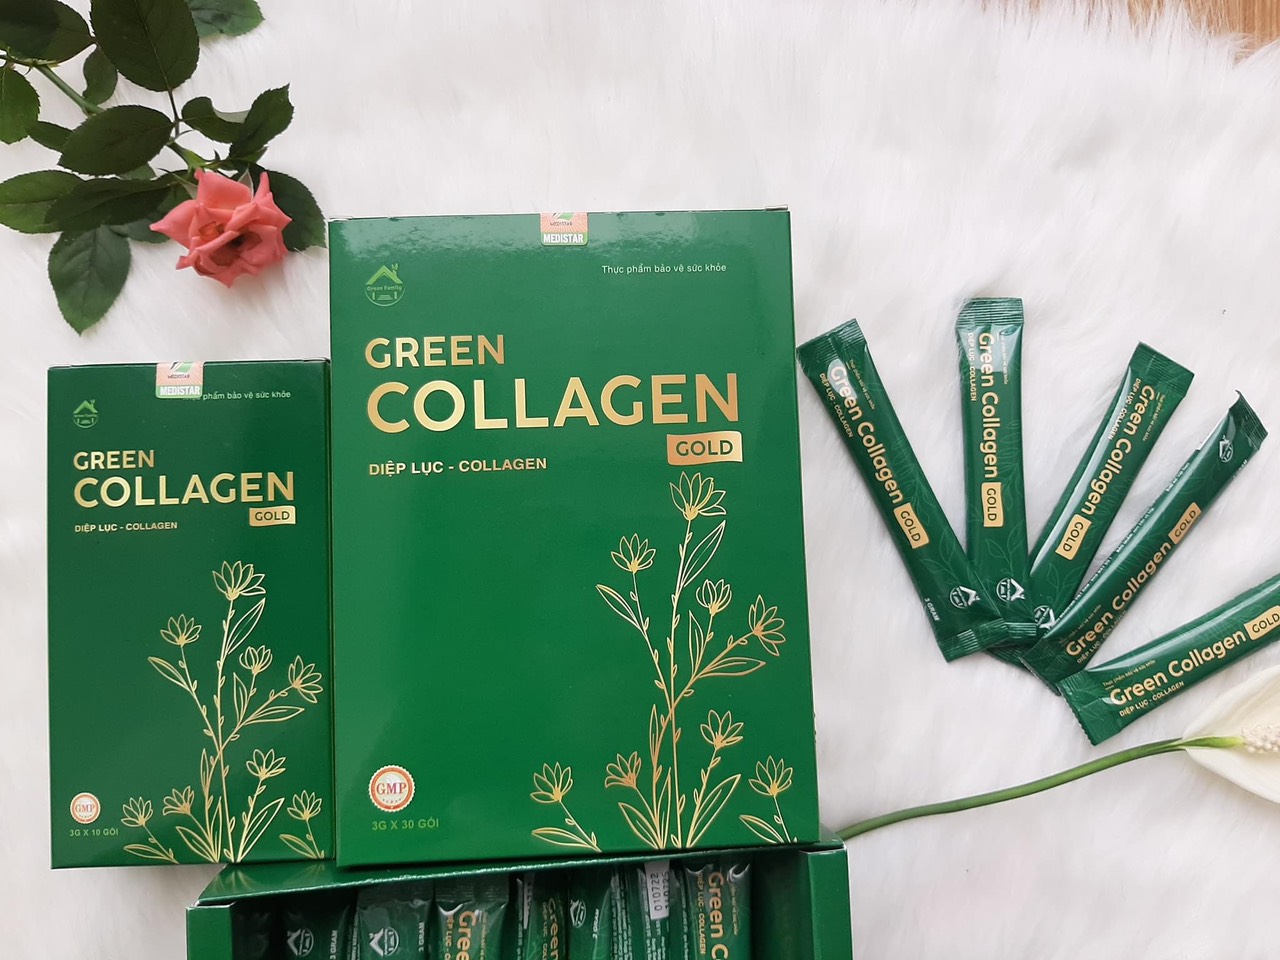 Diệp lục Collagen Gold hộp lớn 30 gói chính hãng Green Family